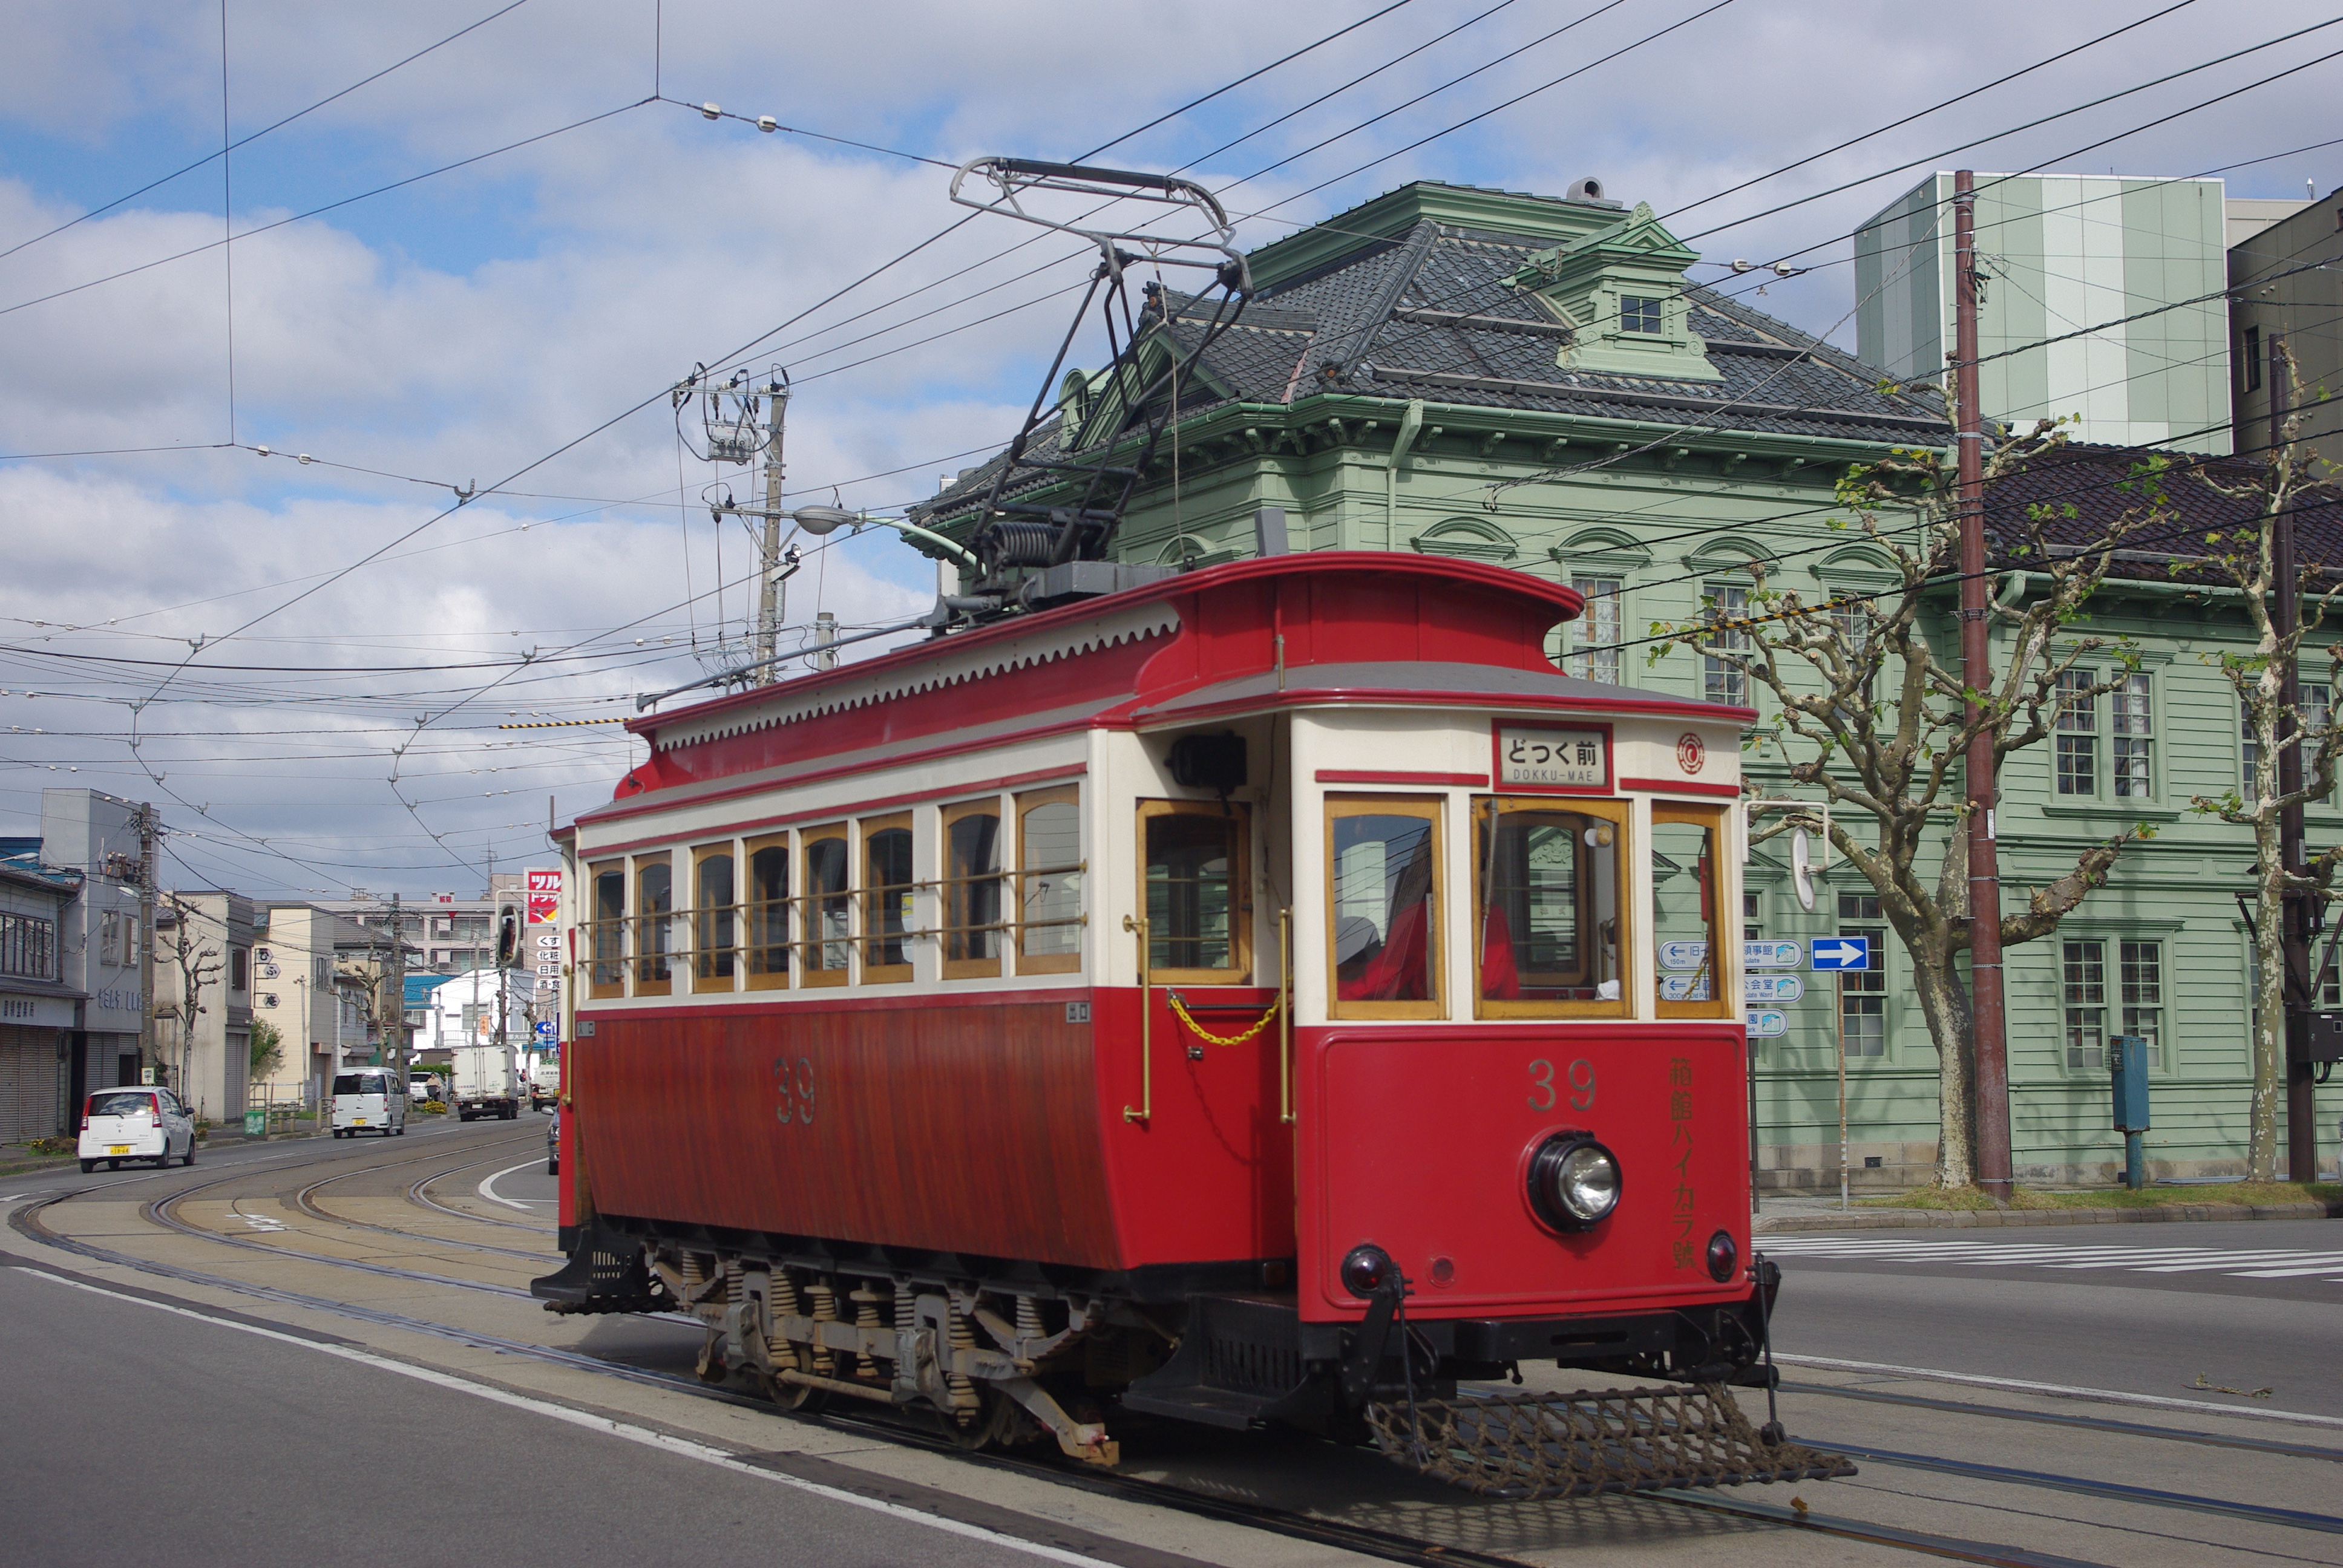 【函館市電】レトロな街並みにレトロな電車